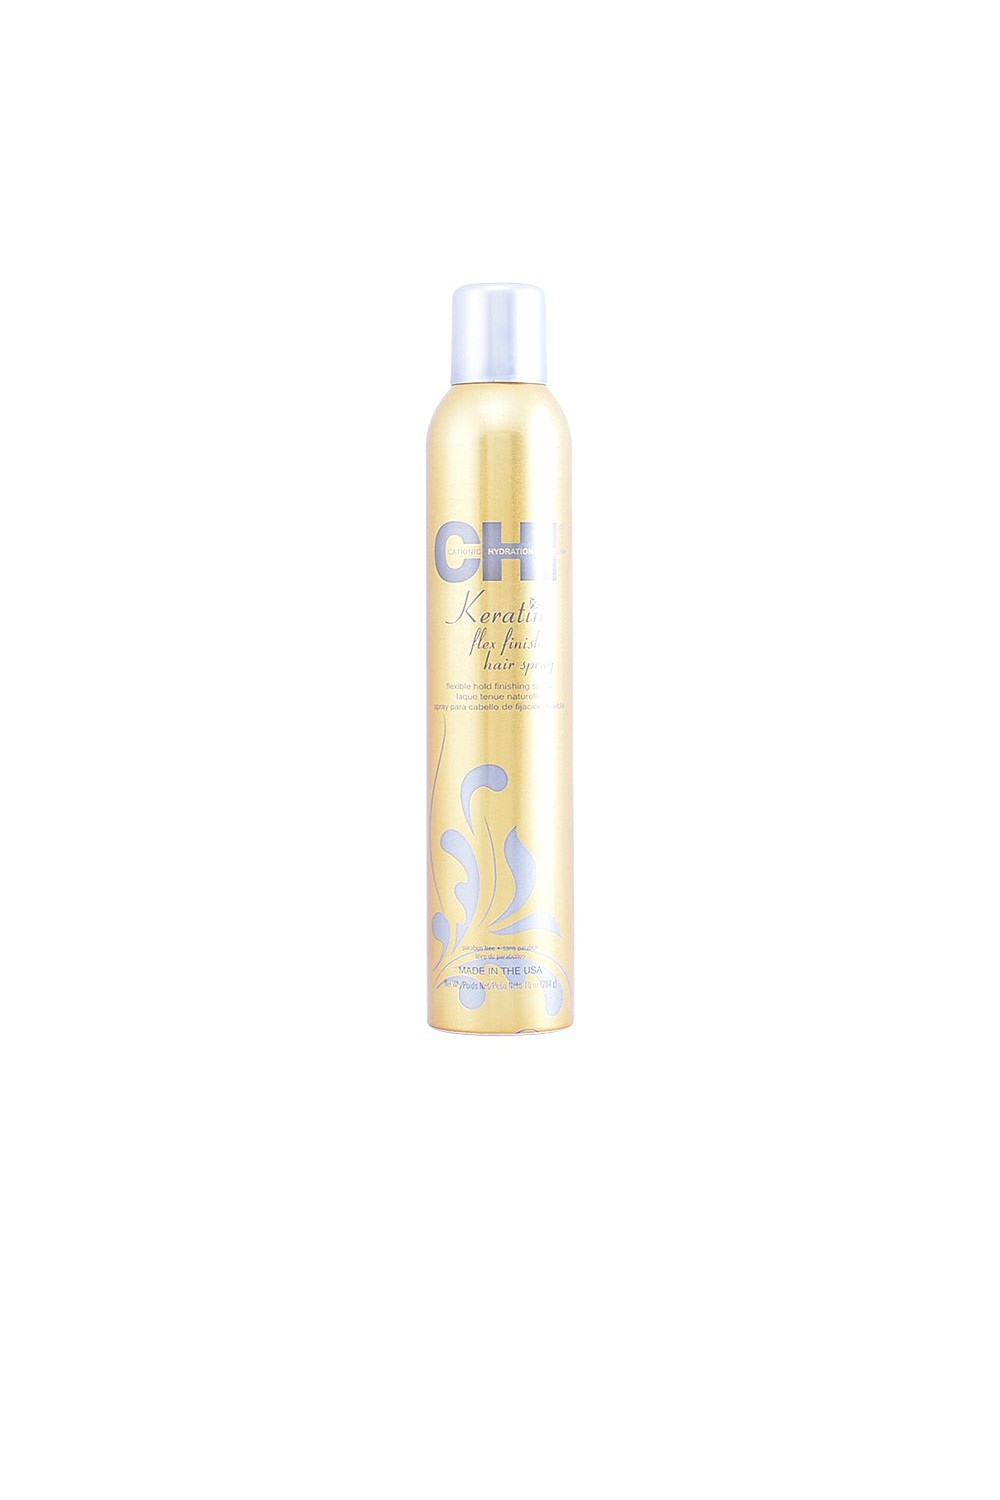 CHI FAROUK - Chi Keratin Flex Finish Hair Spray 284g